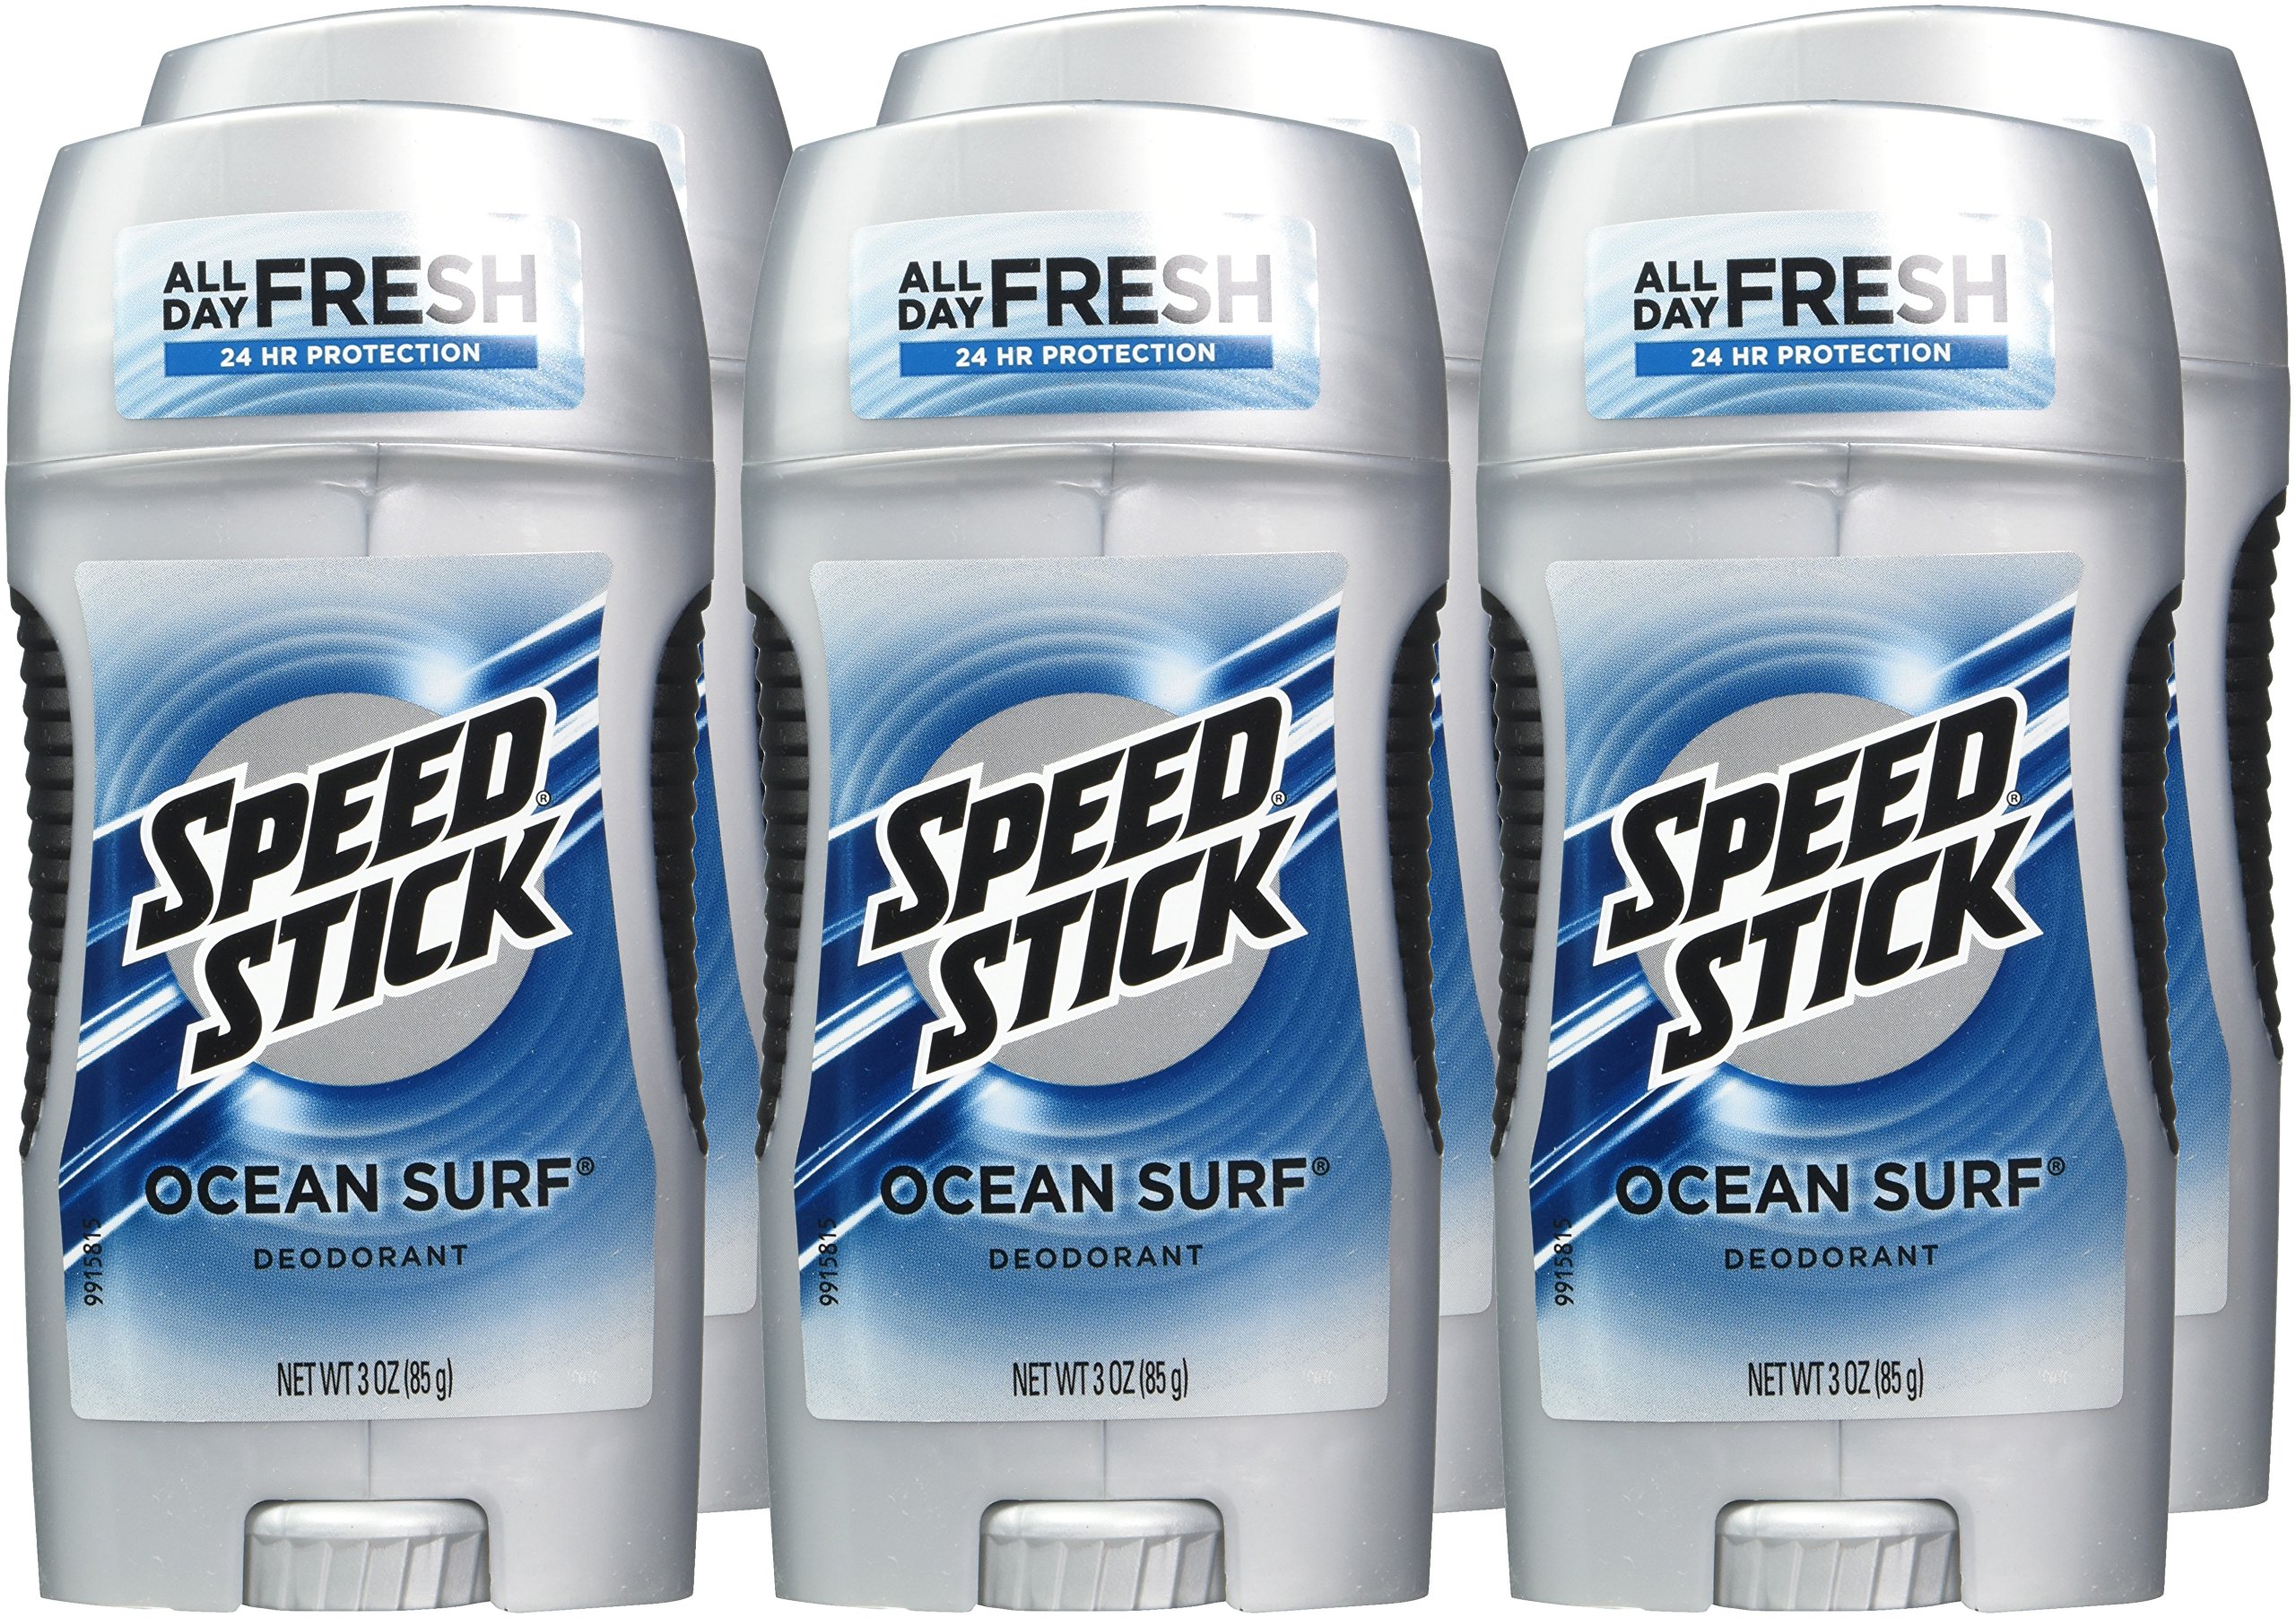 Speed Stick Underarm Deodorant for Men, Aluminum Free, Ocean Surf - 3 Ounce (Pack of 6)